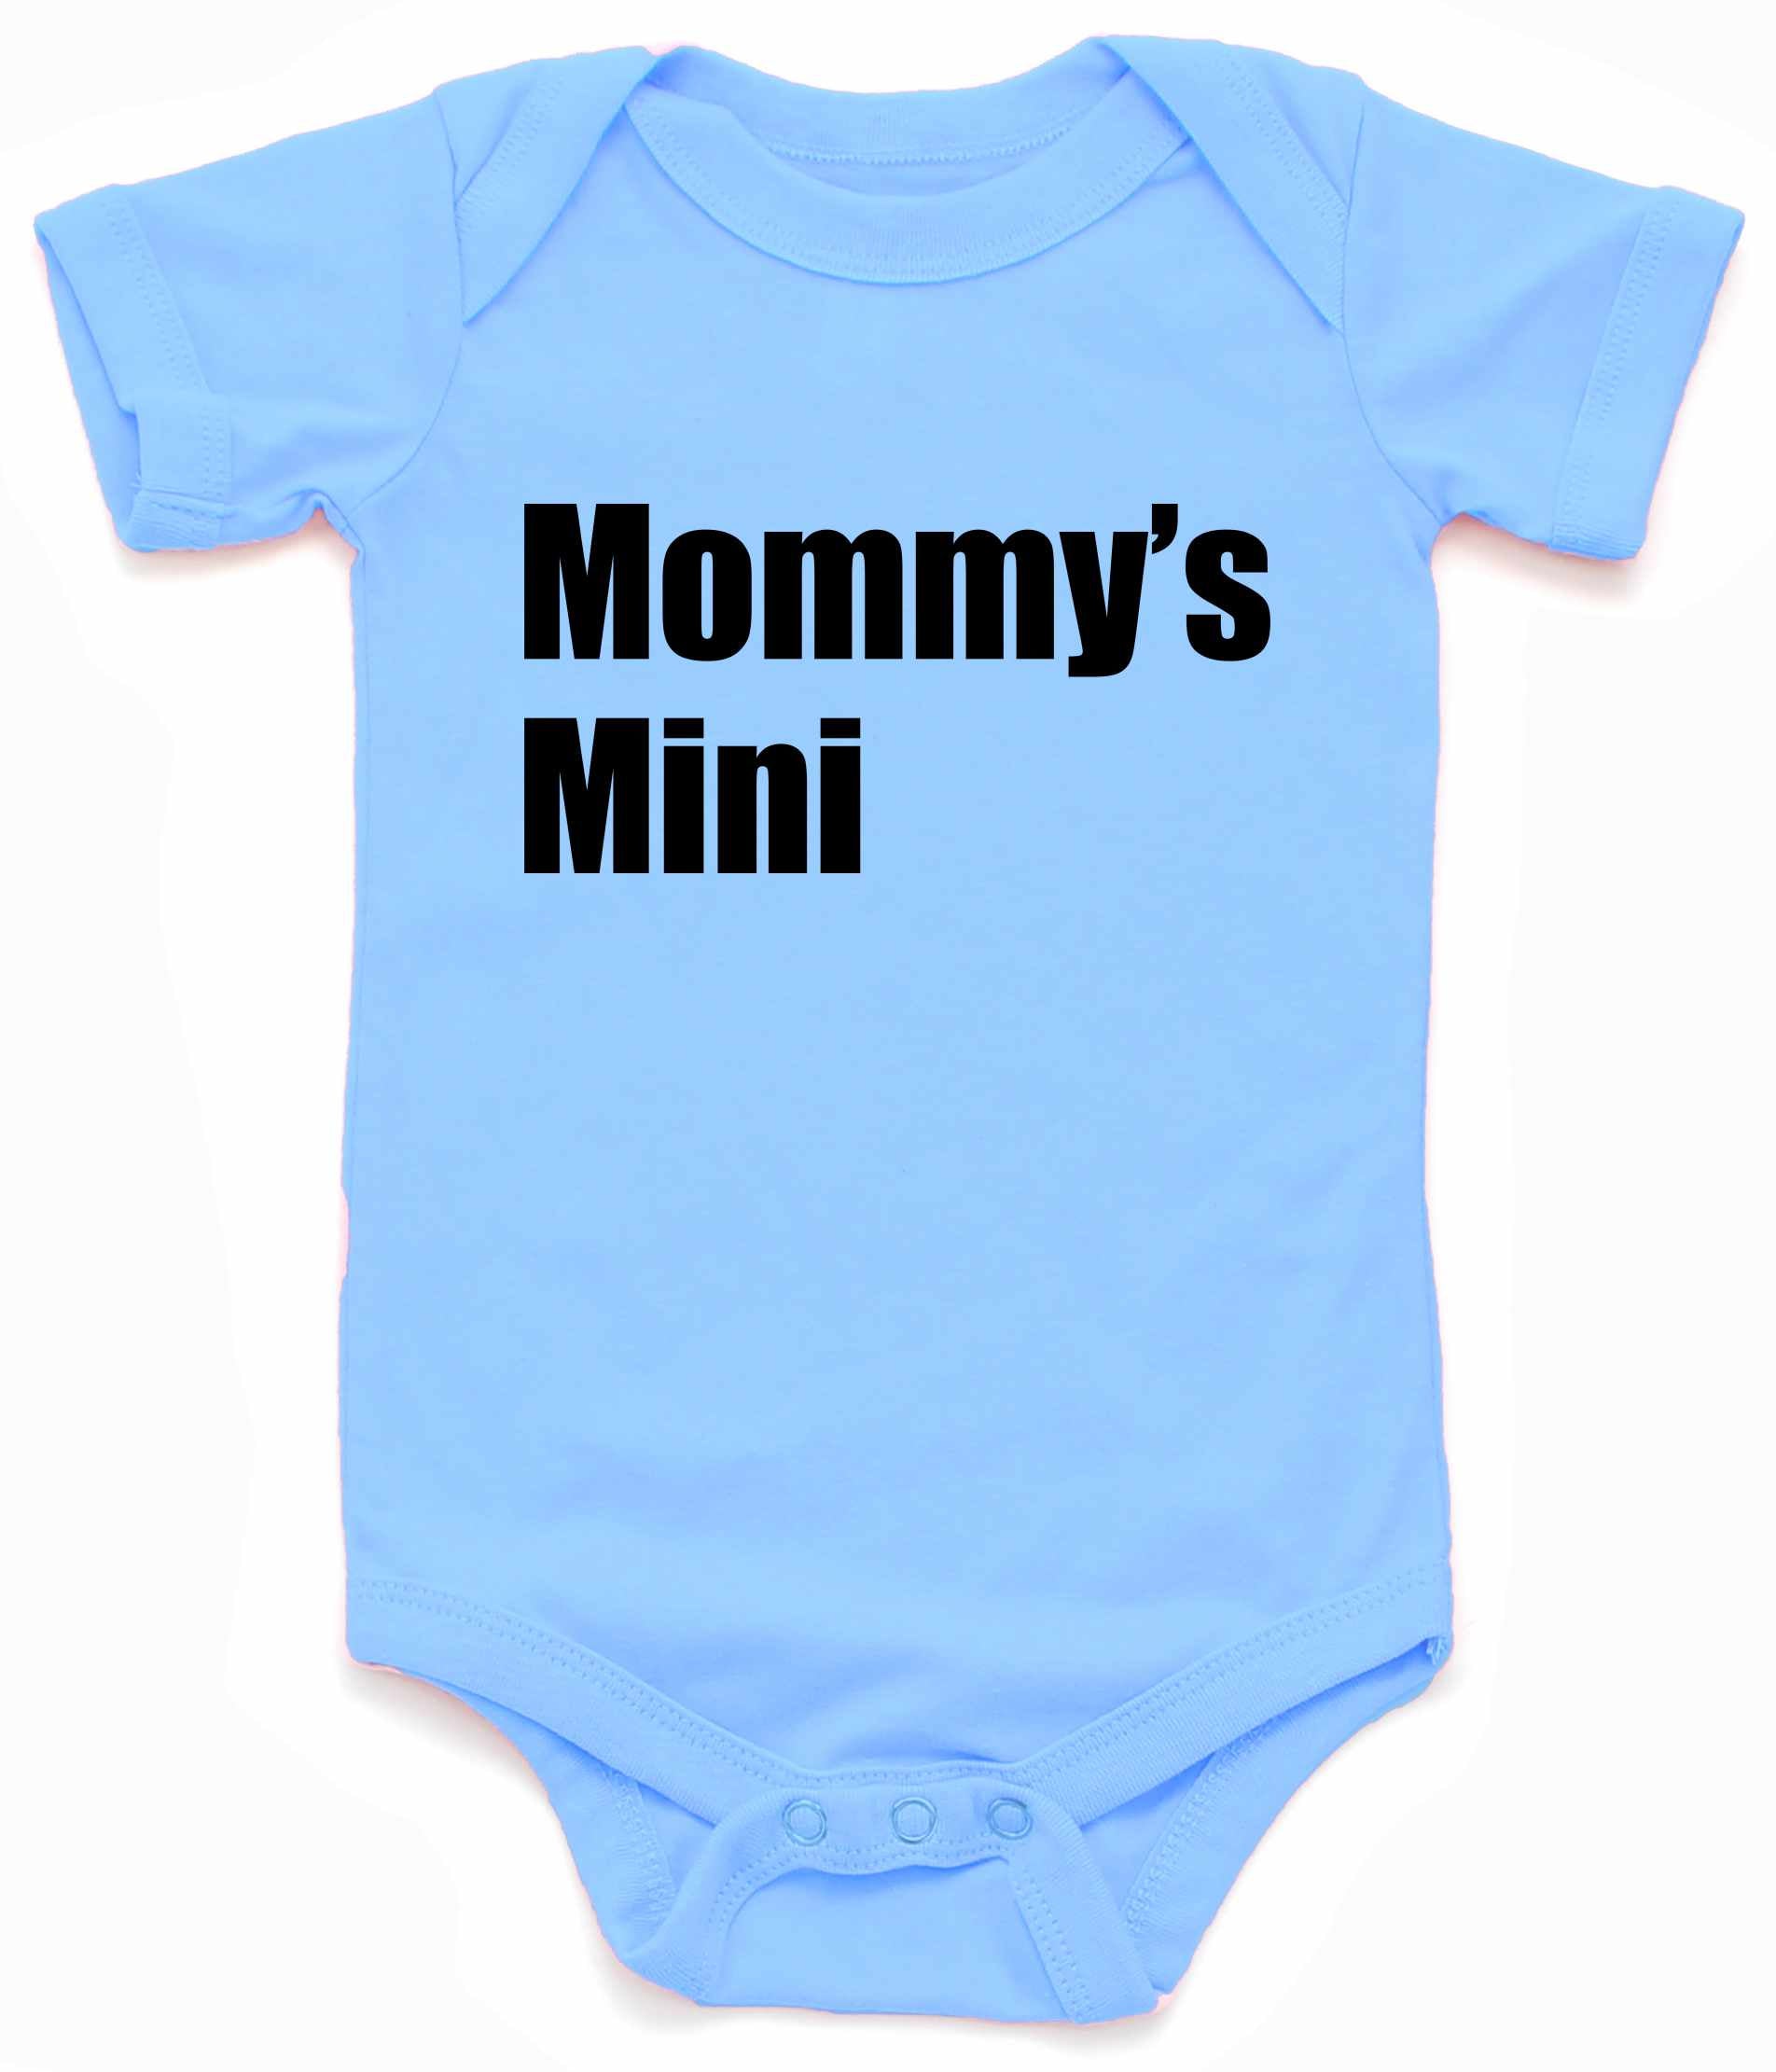 Mommy's Mini Infant BodySuit - Light Blue / NewBorn - Light Blue / 6 Month - Light Blue / 12 Month - Light Blue / 18 Month - Light Blue / 24 Month